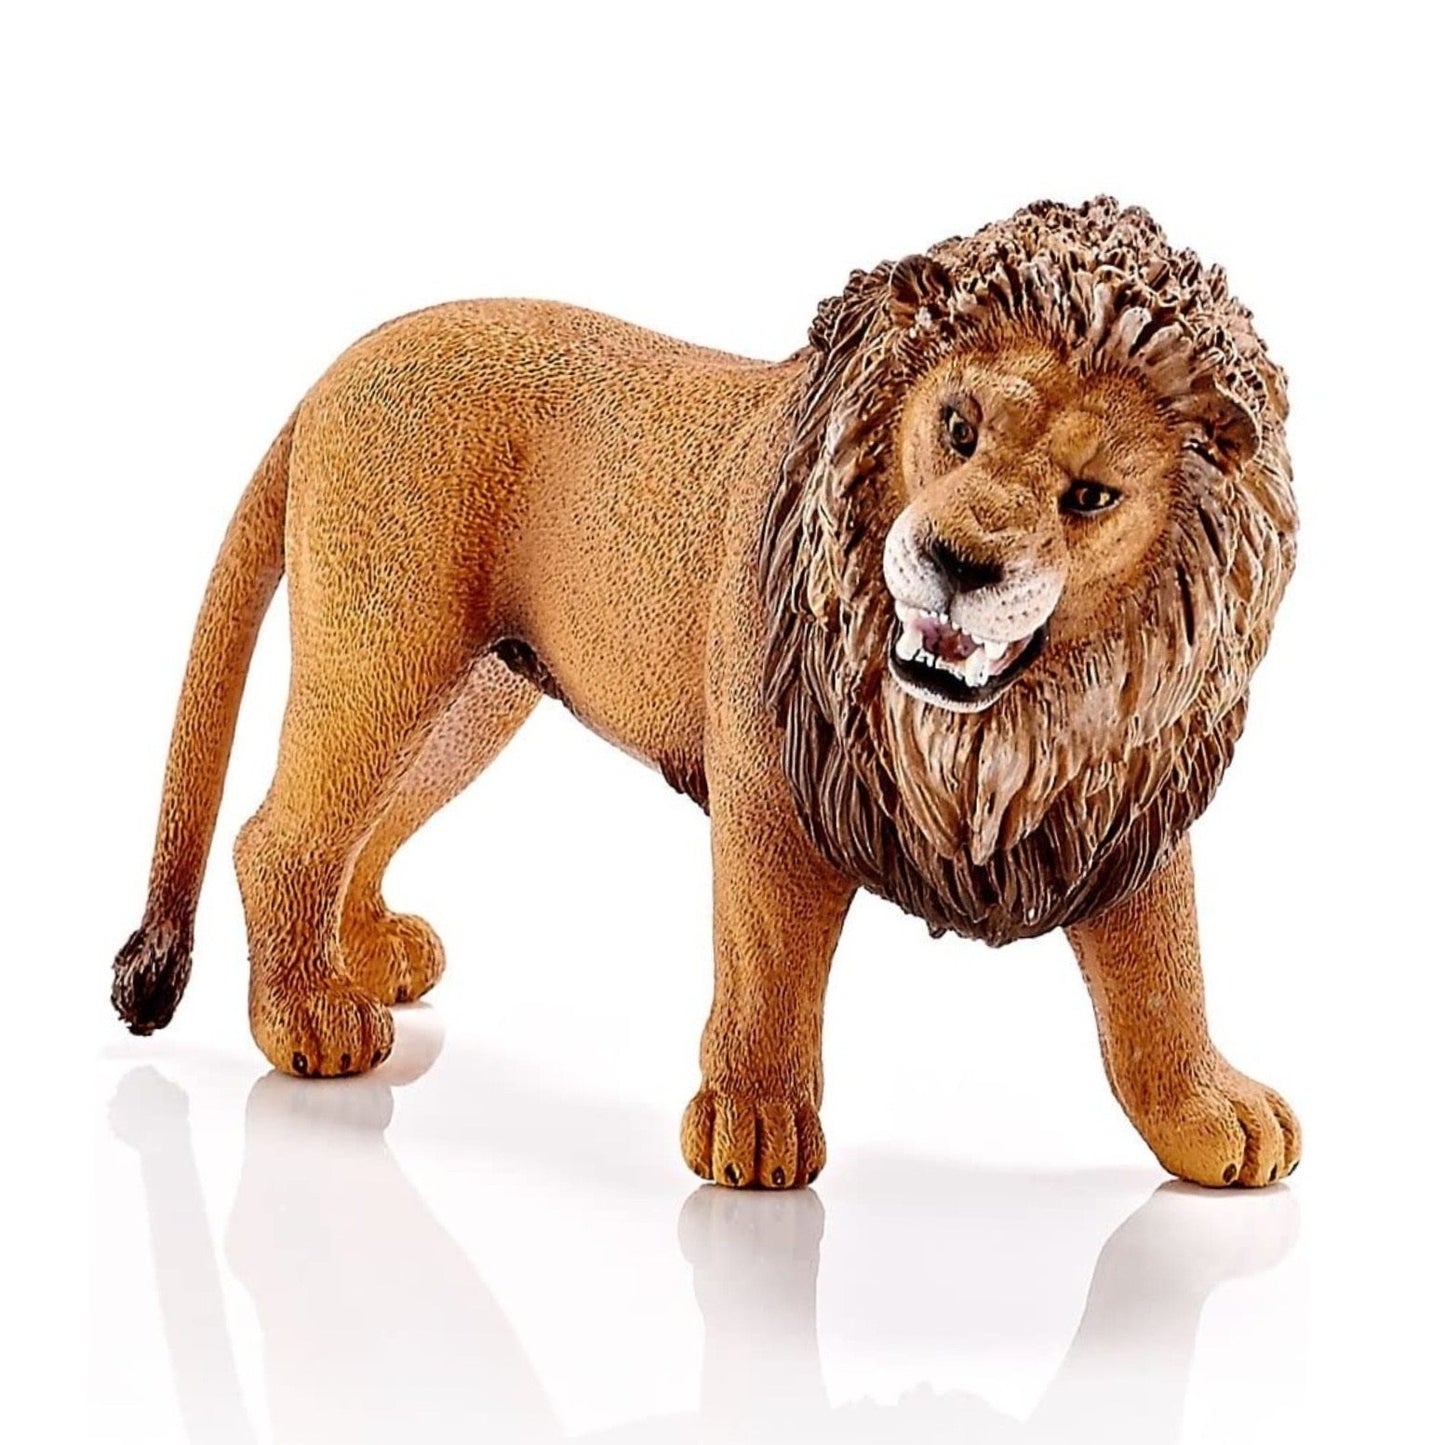 Roaring Lion 4" Figure